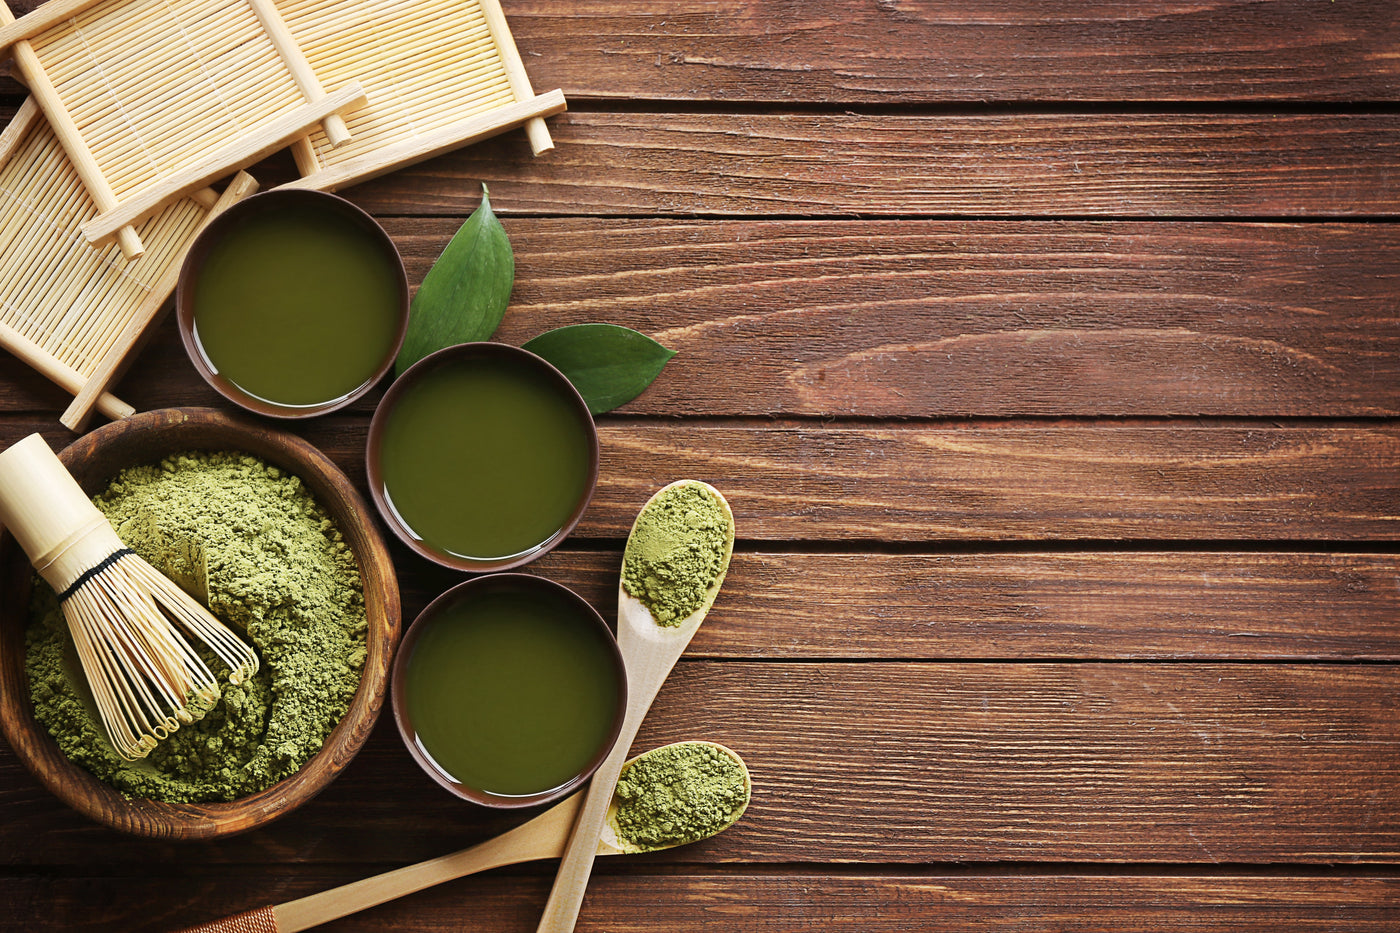 Bamboo Matcha Whisk Chasen Tool Preparing Green Tea Matcha Mixer